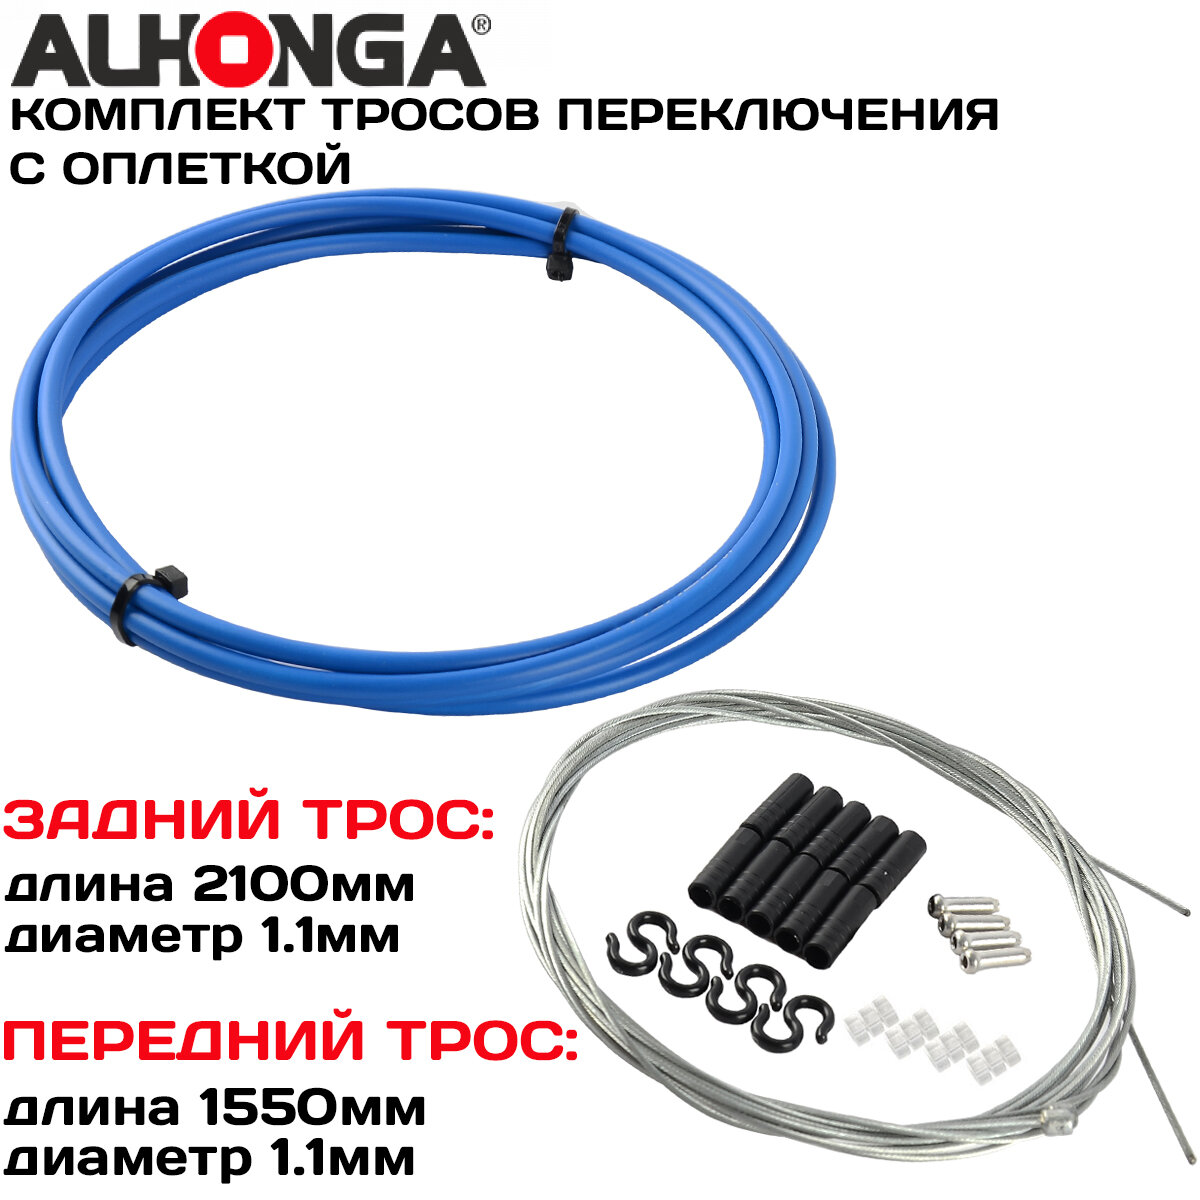 Комплект тросов переключения (2шт) Alhonga МТВ с оплеткой концевики оплетки и троса синий